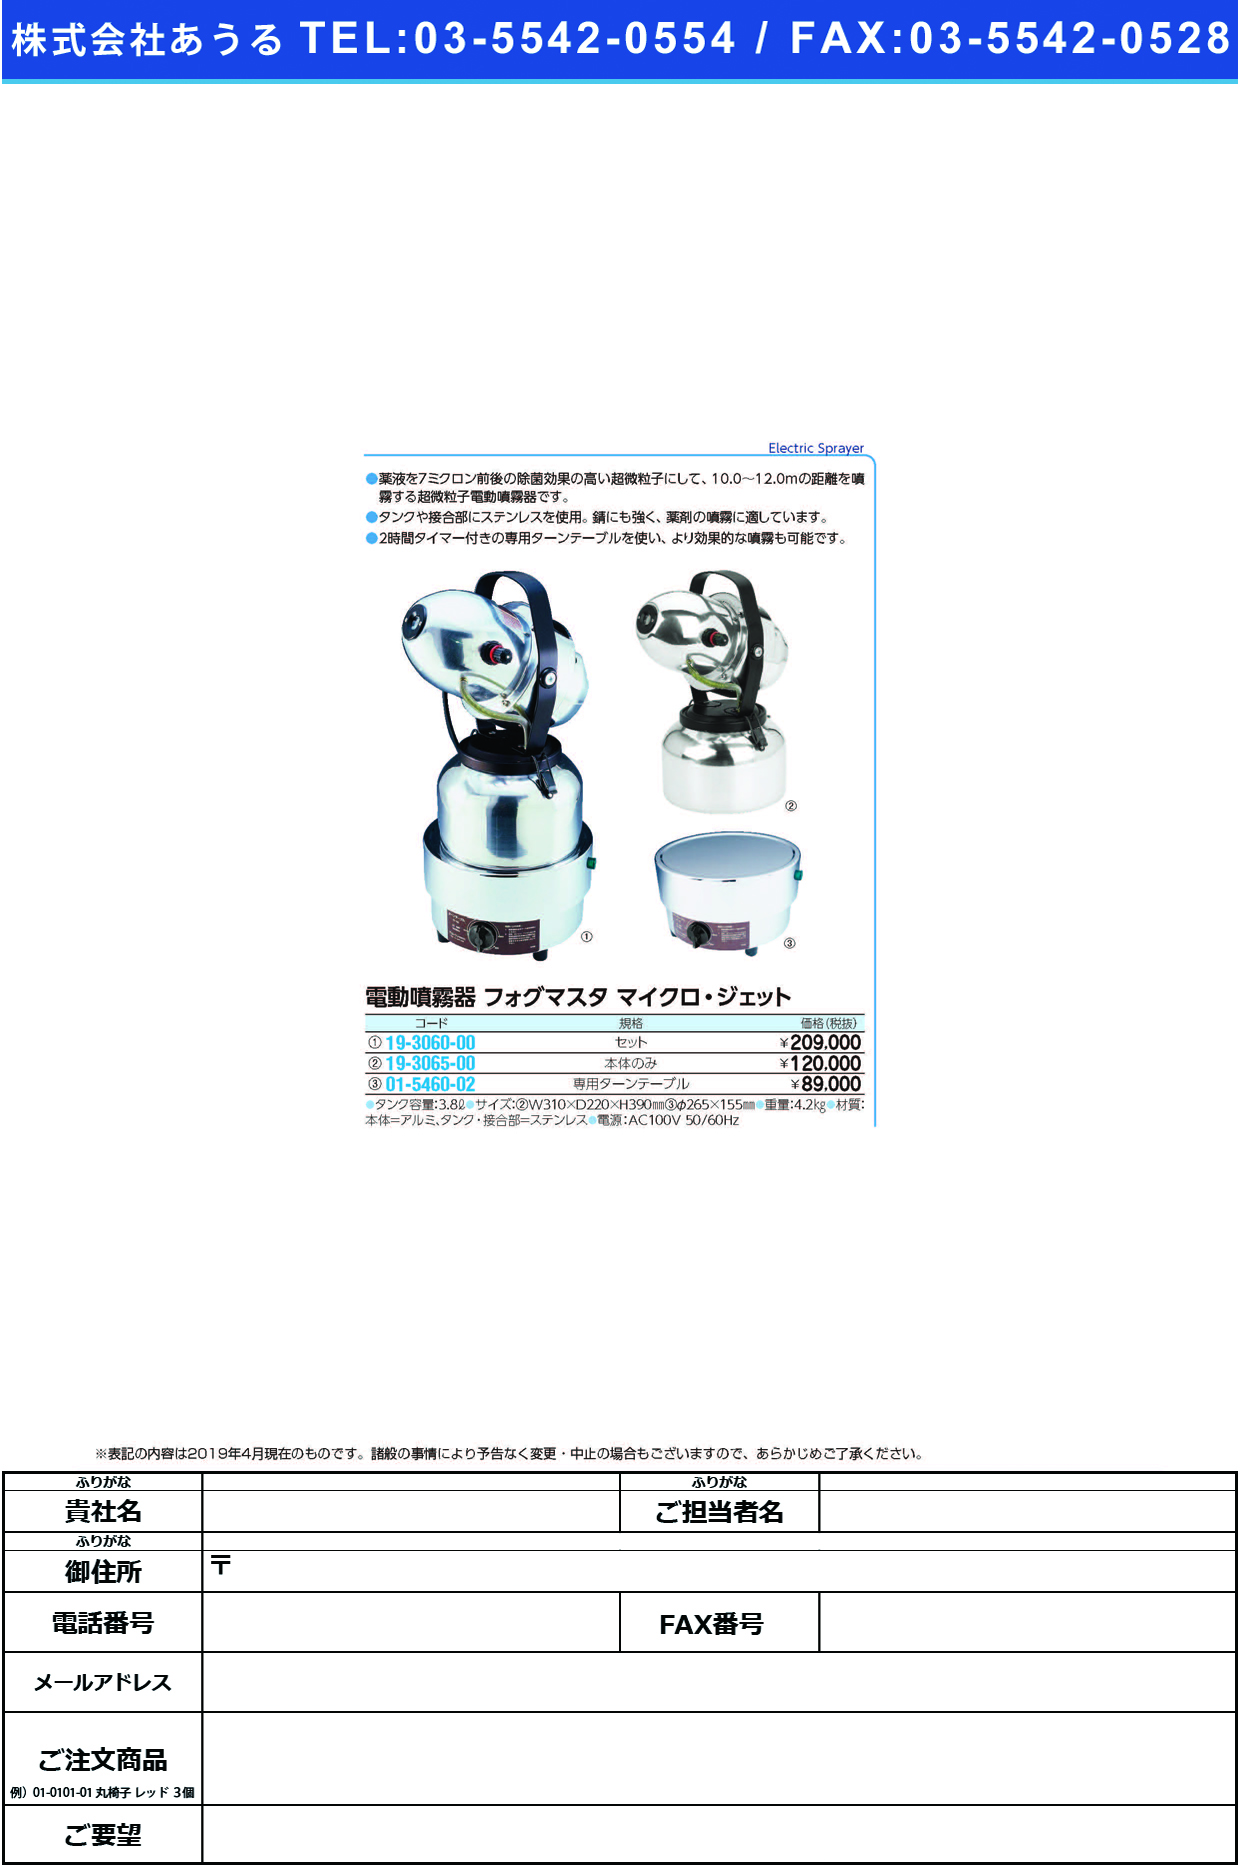 (01-5460-02)フォグマスタ専用ターンテーブル TT-701 ﾌｫｸﾞﾏｽﾀ【1台単位】【2019年カタログ商品】